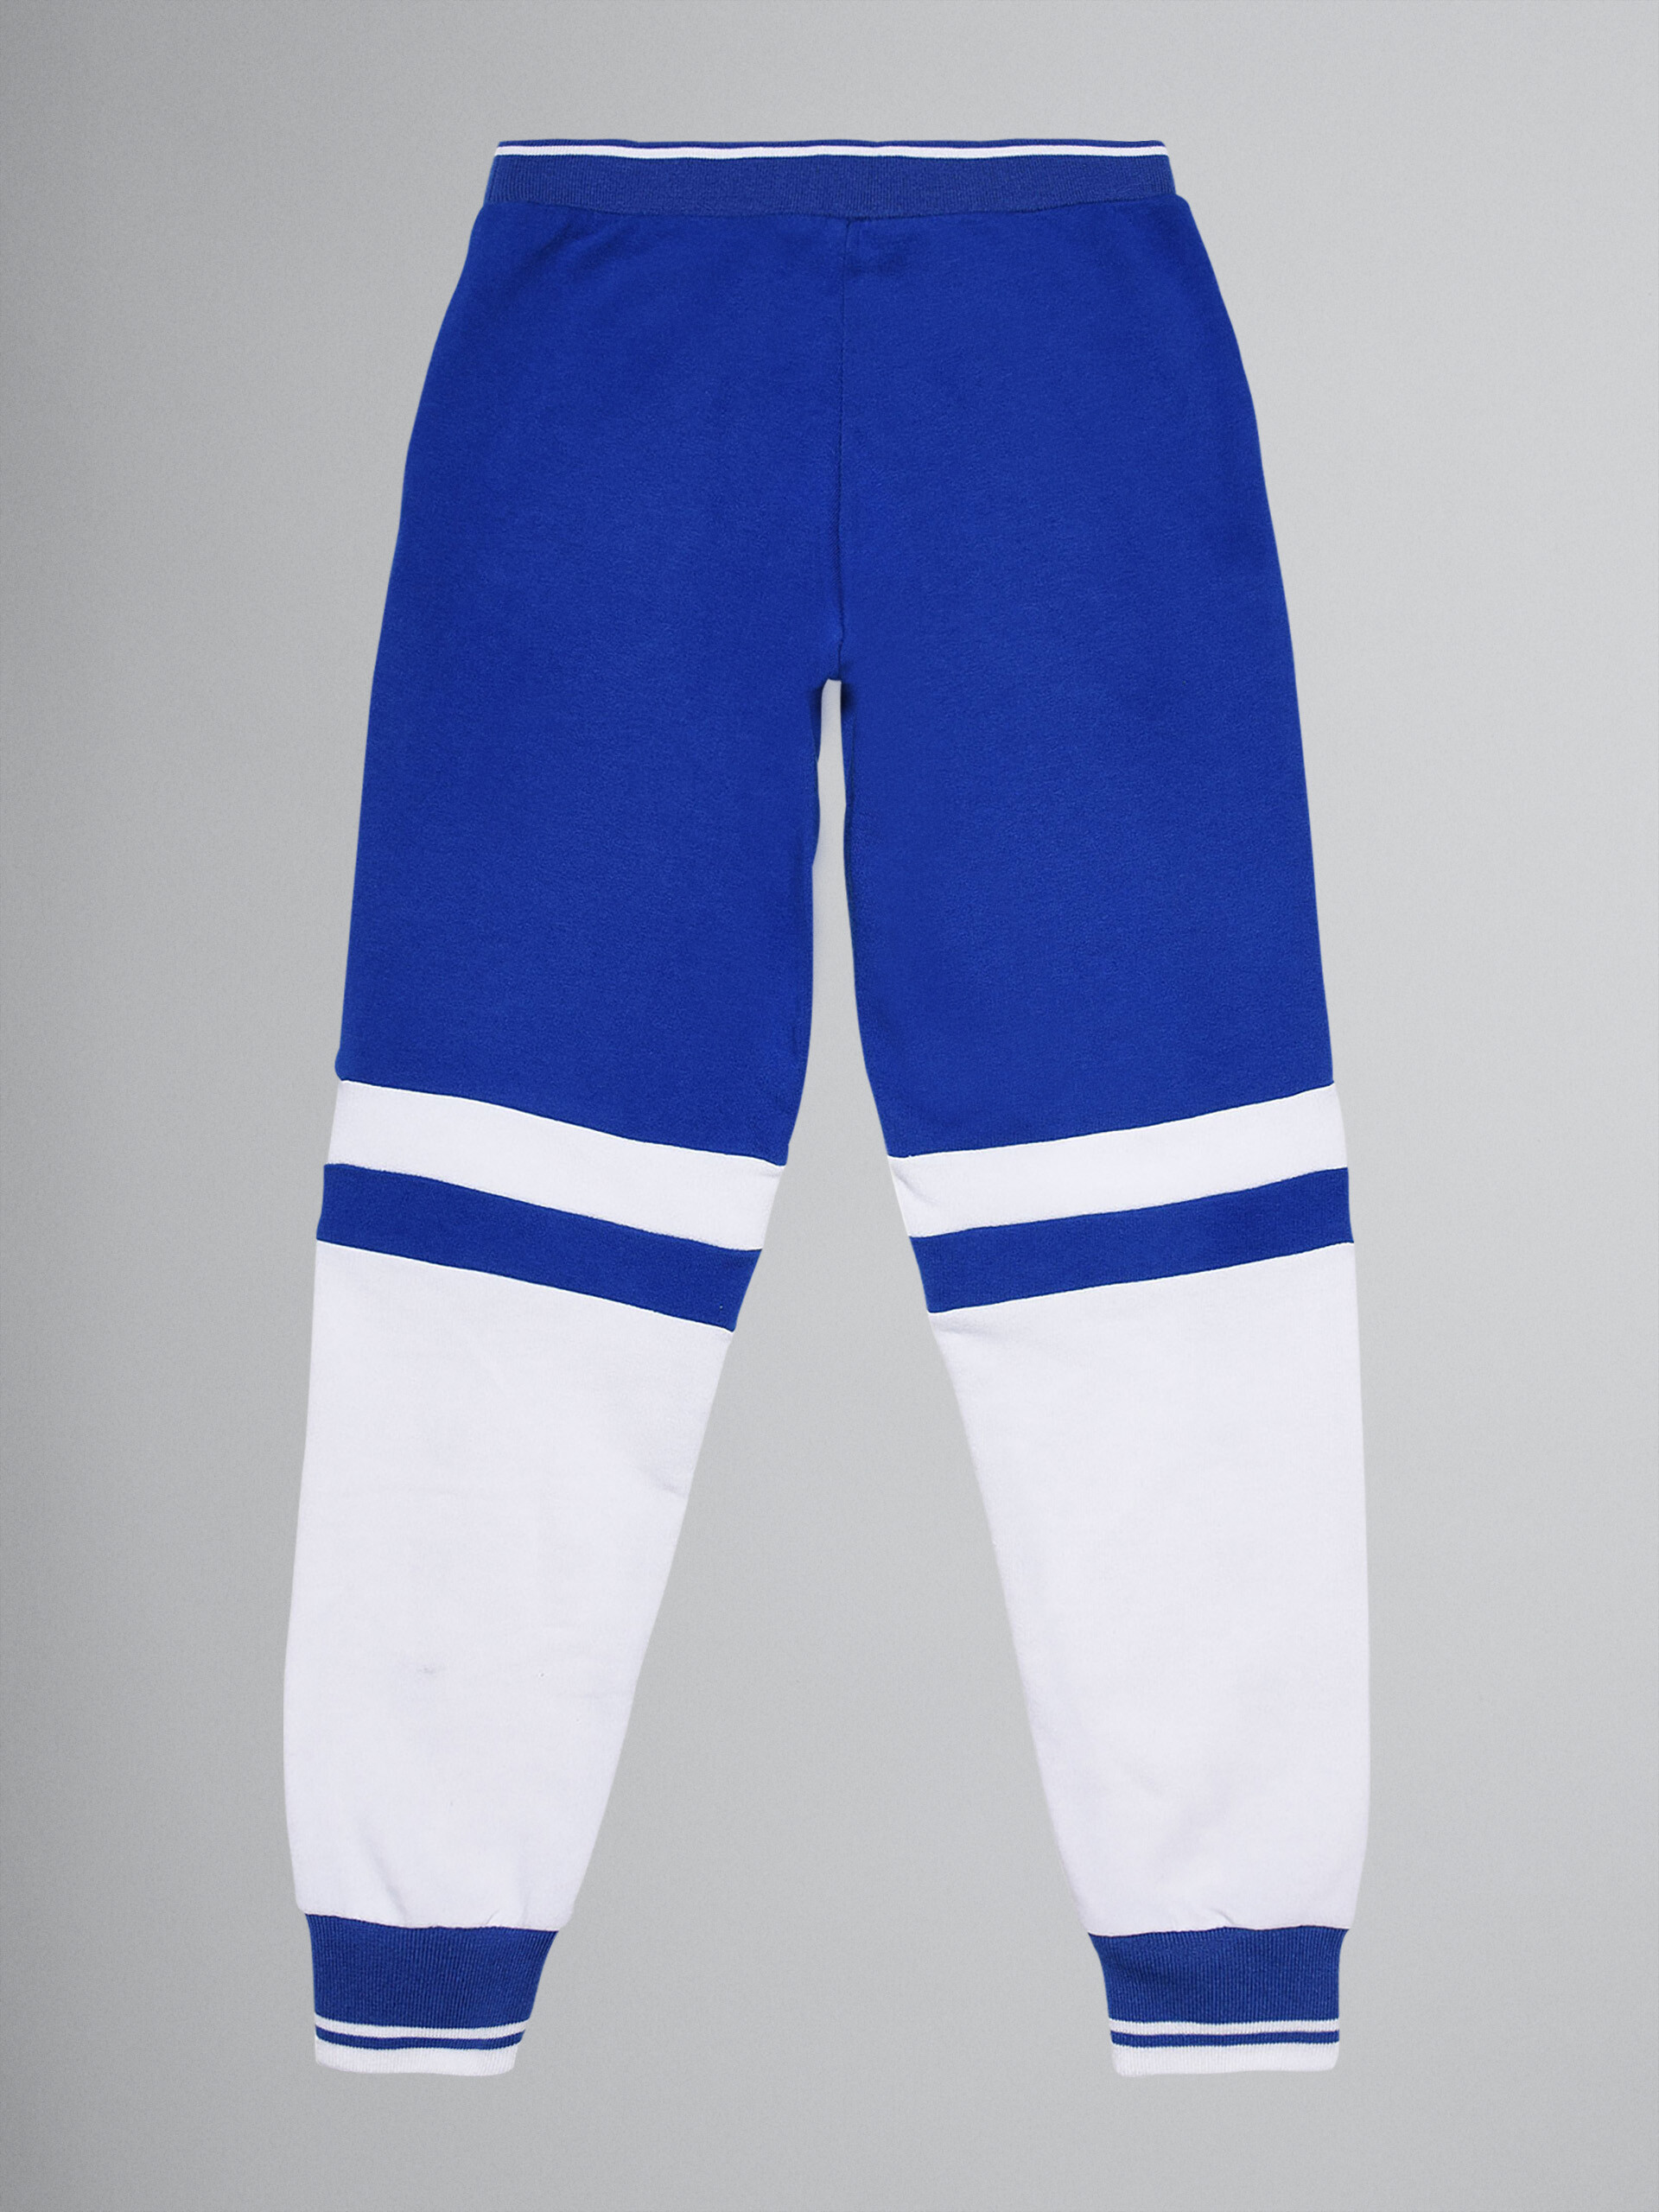 Colour-block blue sweatshirt cotton track pants - Pants - Image 2